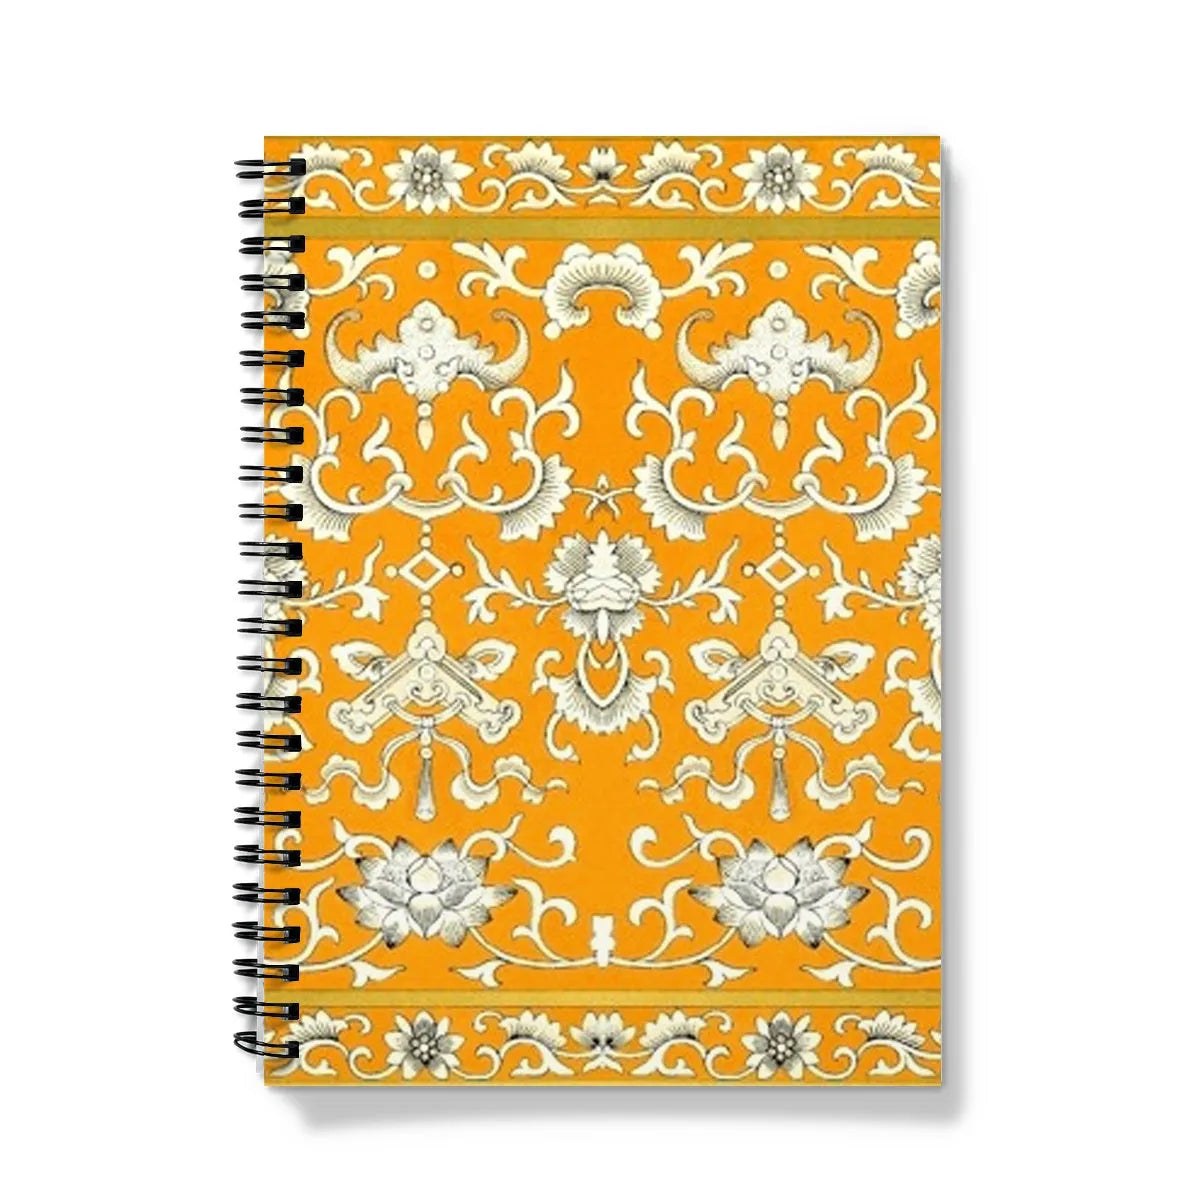 Tangerine Dream Notebook - A5 - Graph Paper - Notebooks & Notepads - Aesthetic Art